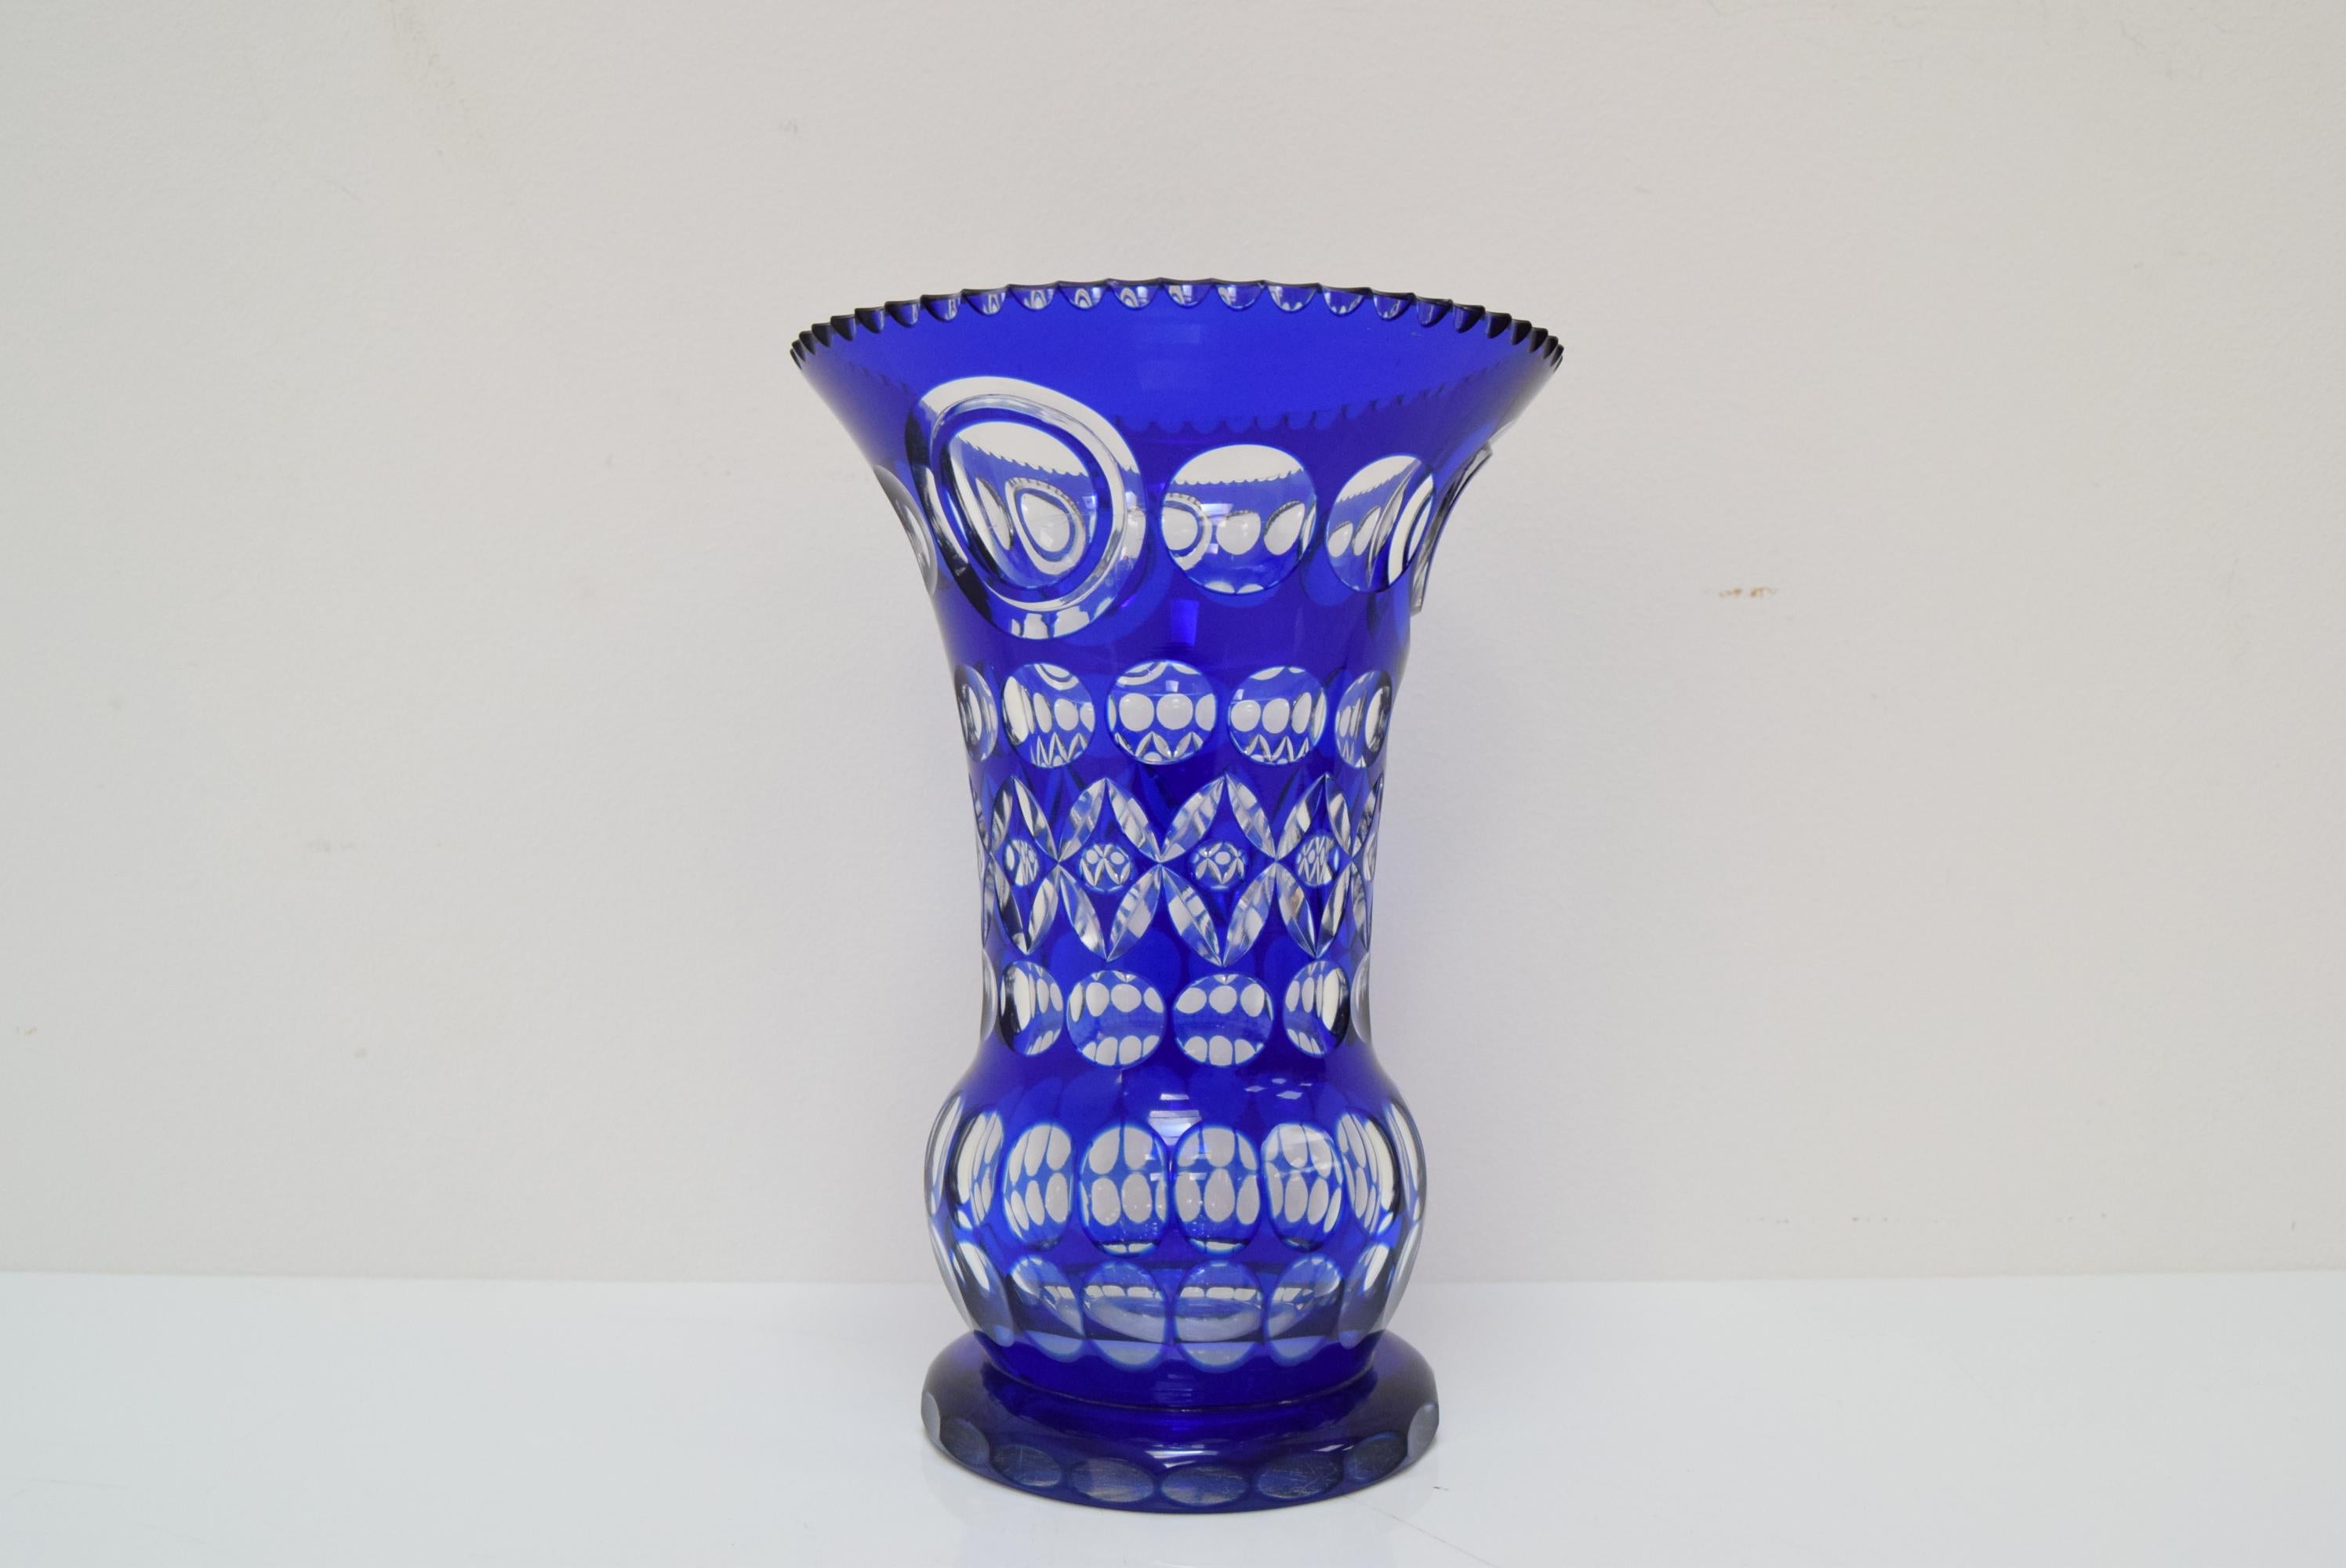 
Fabriqué en Tchécoslovaquie.
Fabriqué en verre de cristal, verre d'art
L'intérieur du vase est rayé par l'usage.
Le vase a un petit éclat (voir photo)
Etat original.